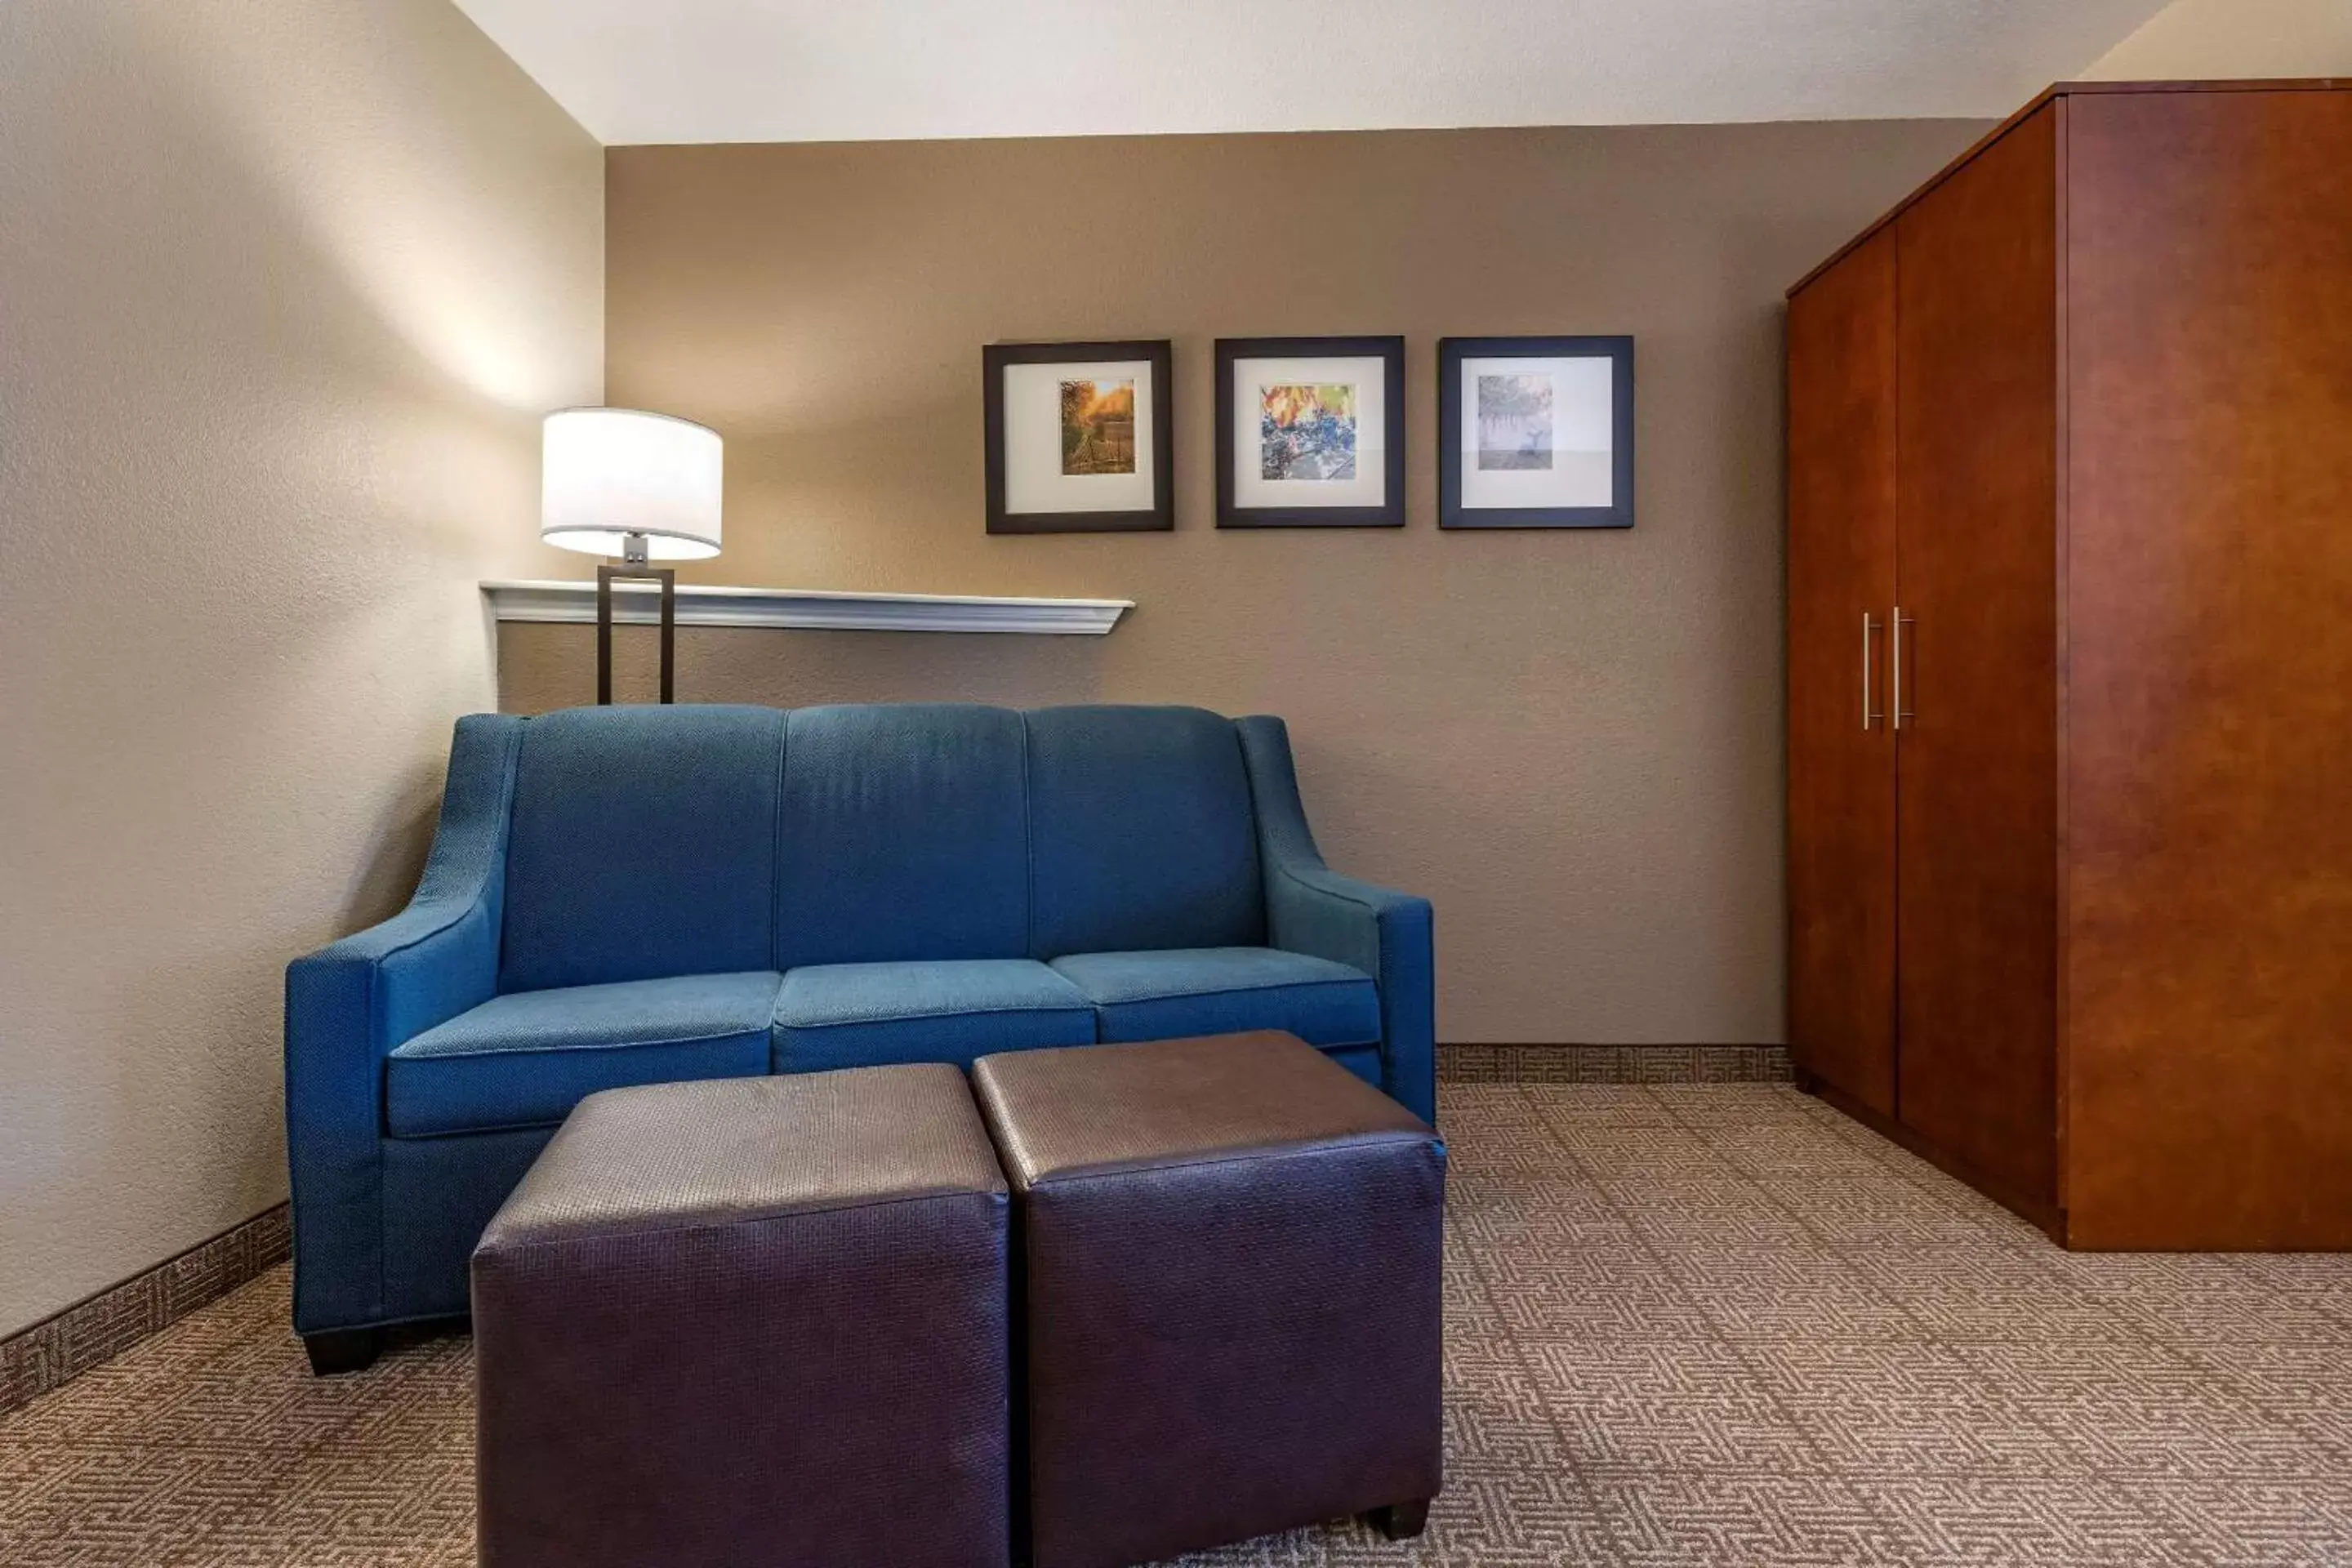 Bedroom, Seating Area in Comfort Inn & Suites Ukiah Mendocino County